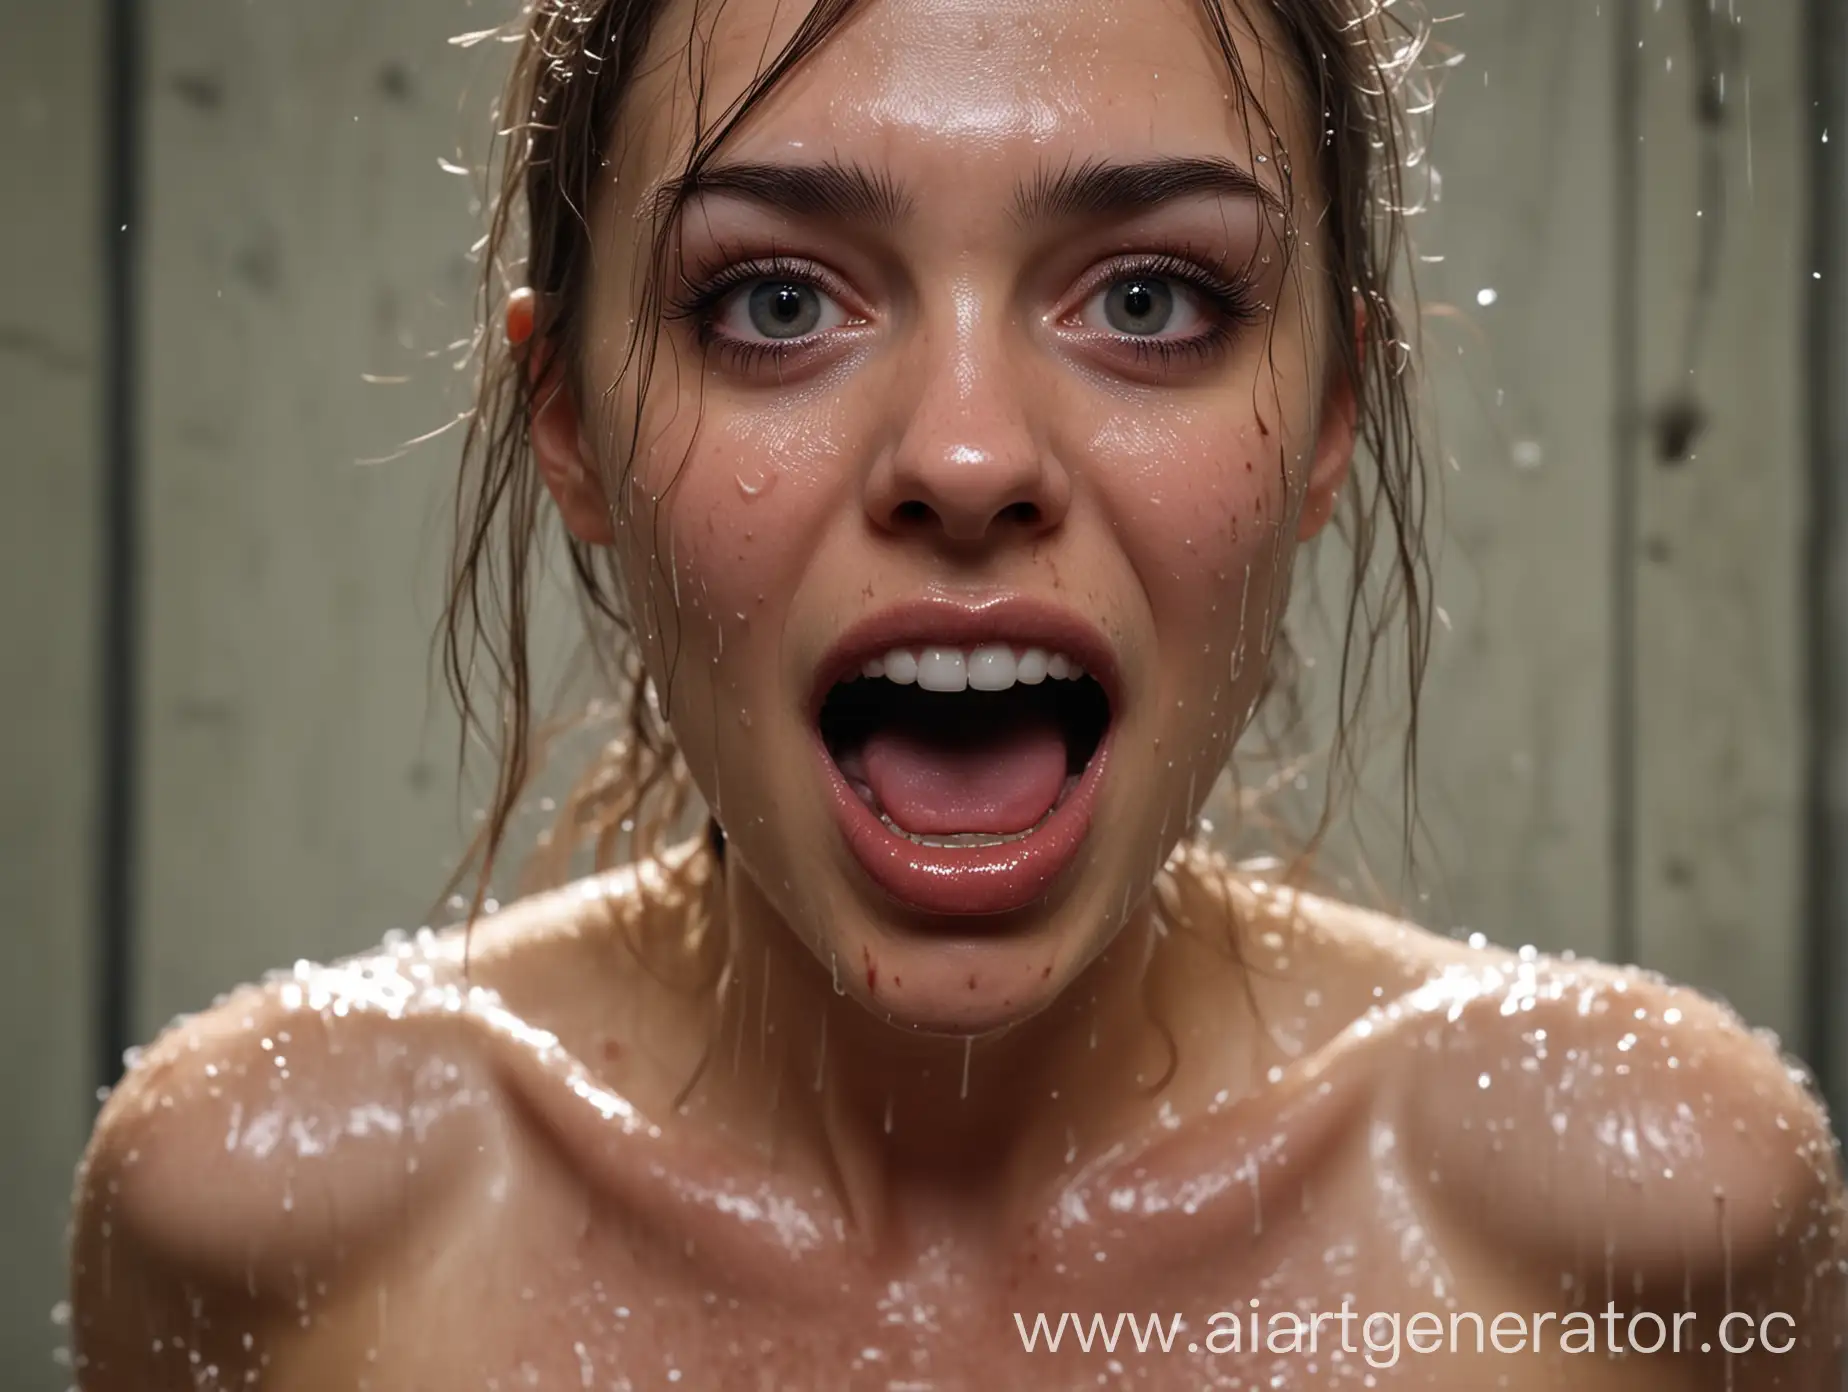 Голая девушка бежит от маньяка половые губы мокрые от возбуждения и широкие глаза .4k